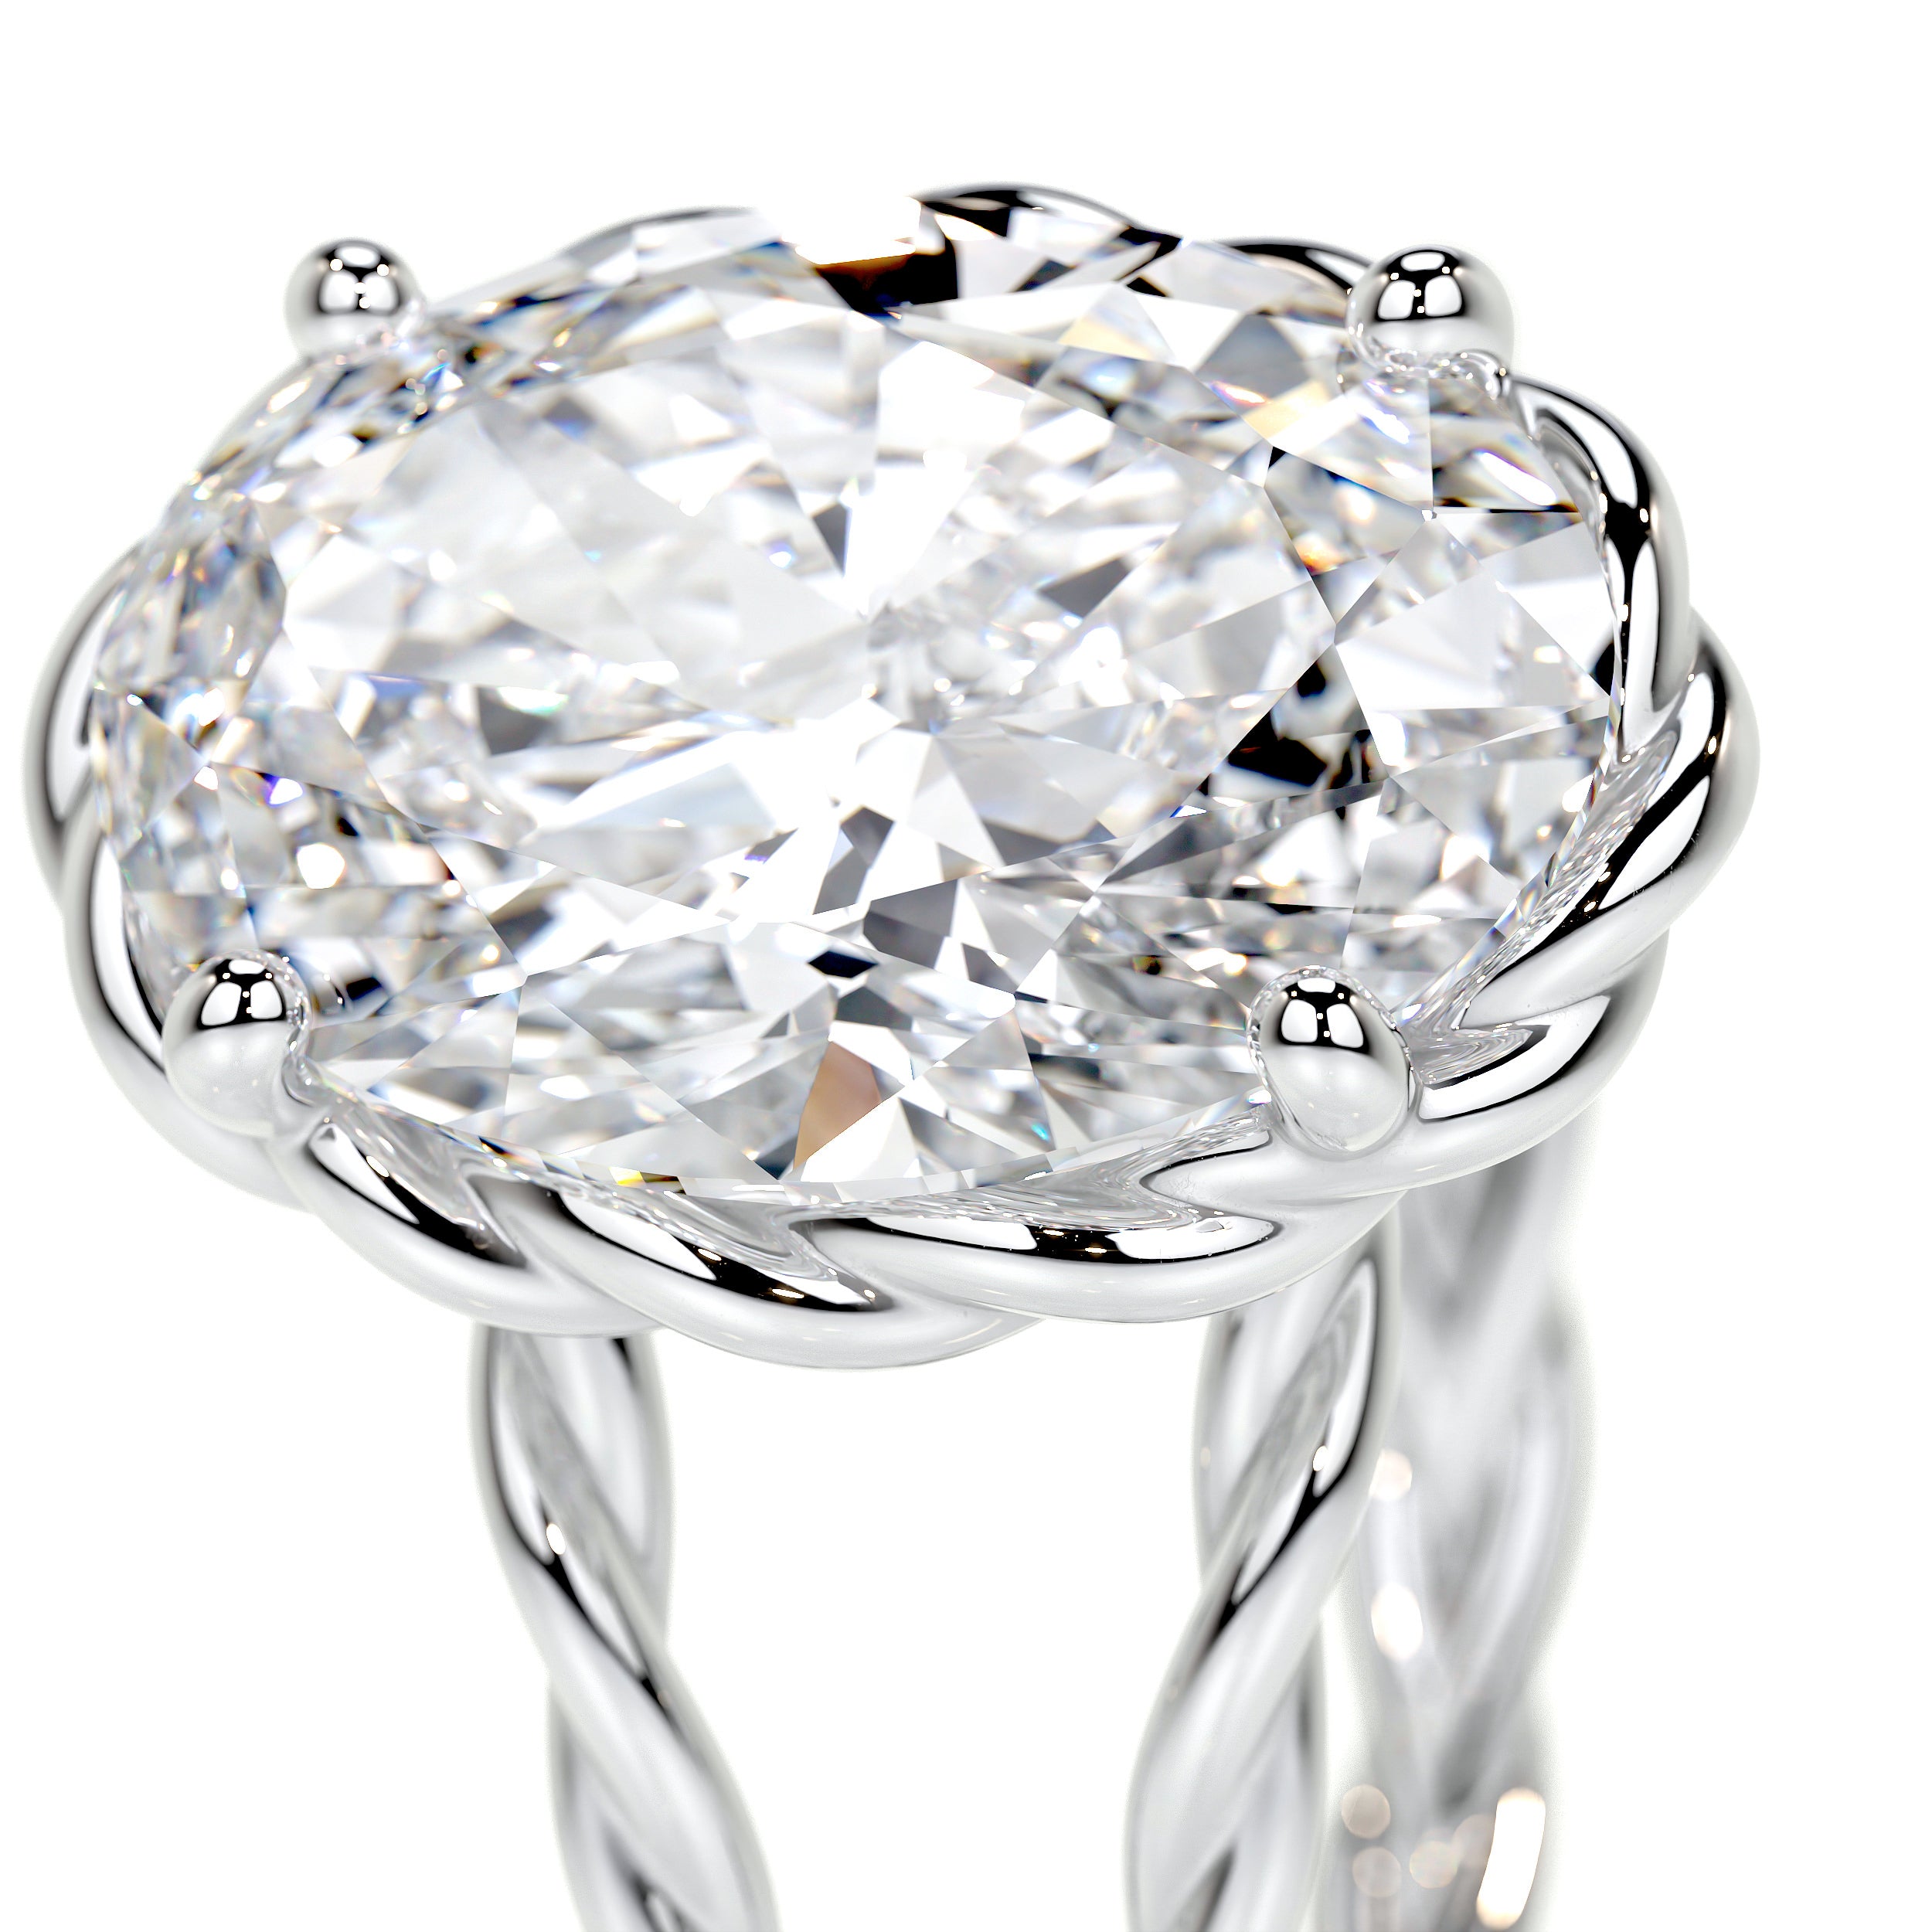 Milani Lab Grown Diamond Ring -14K White Gold